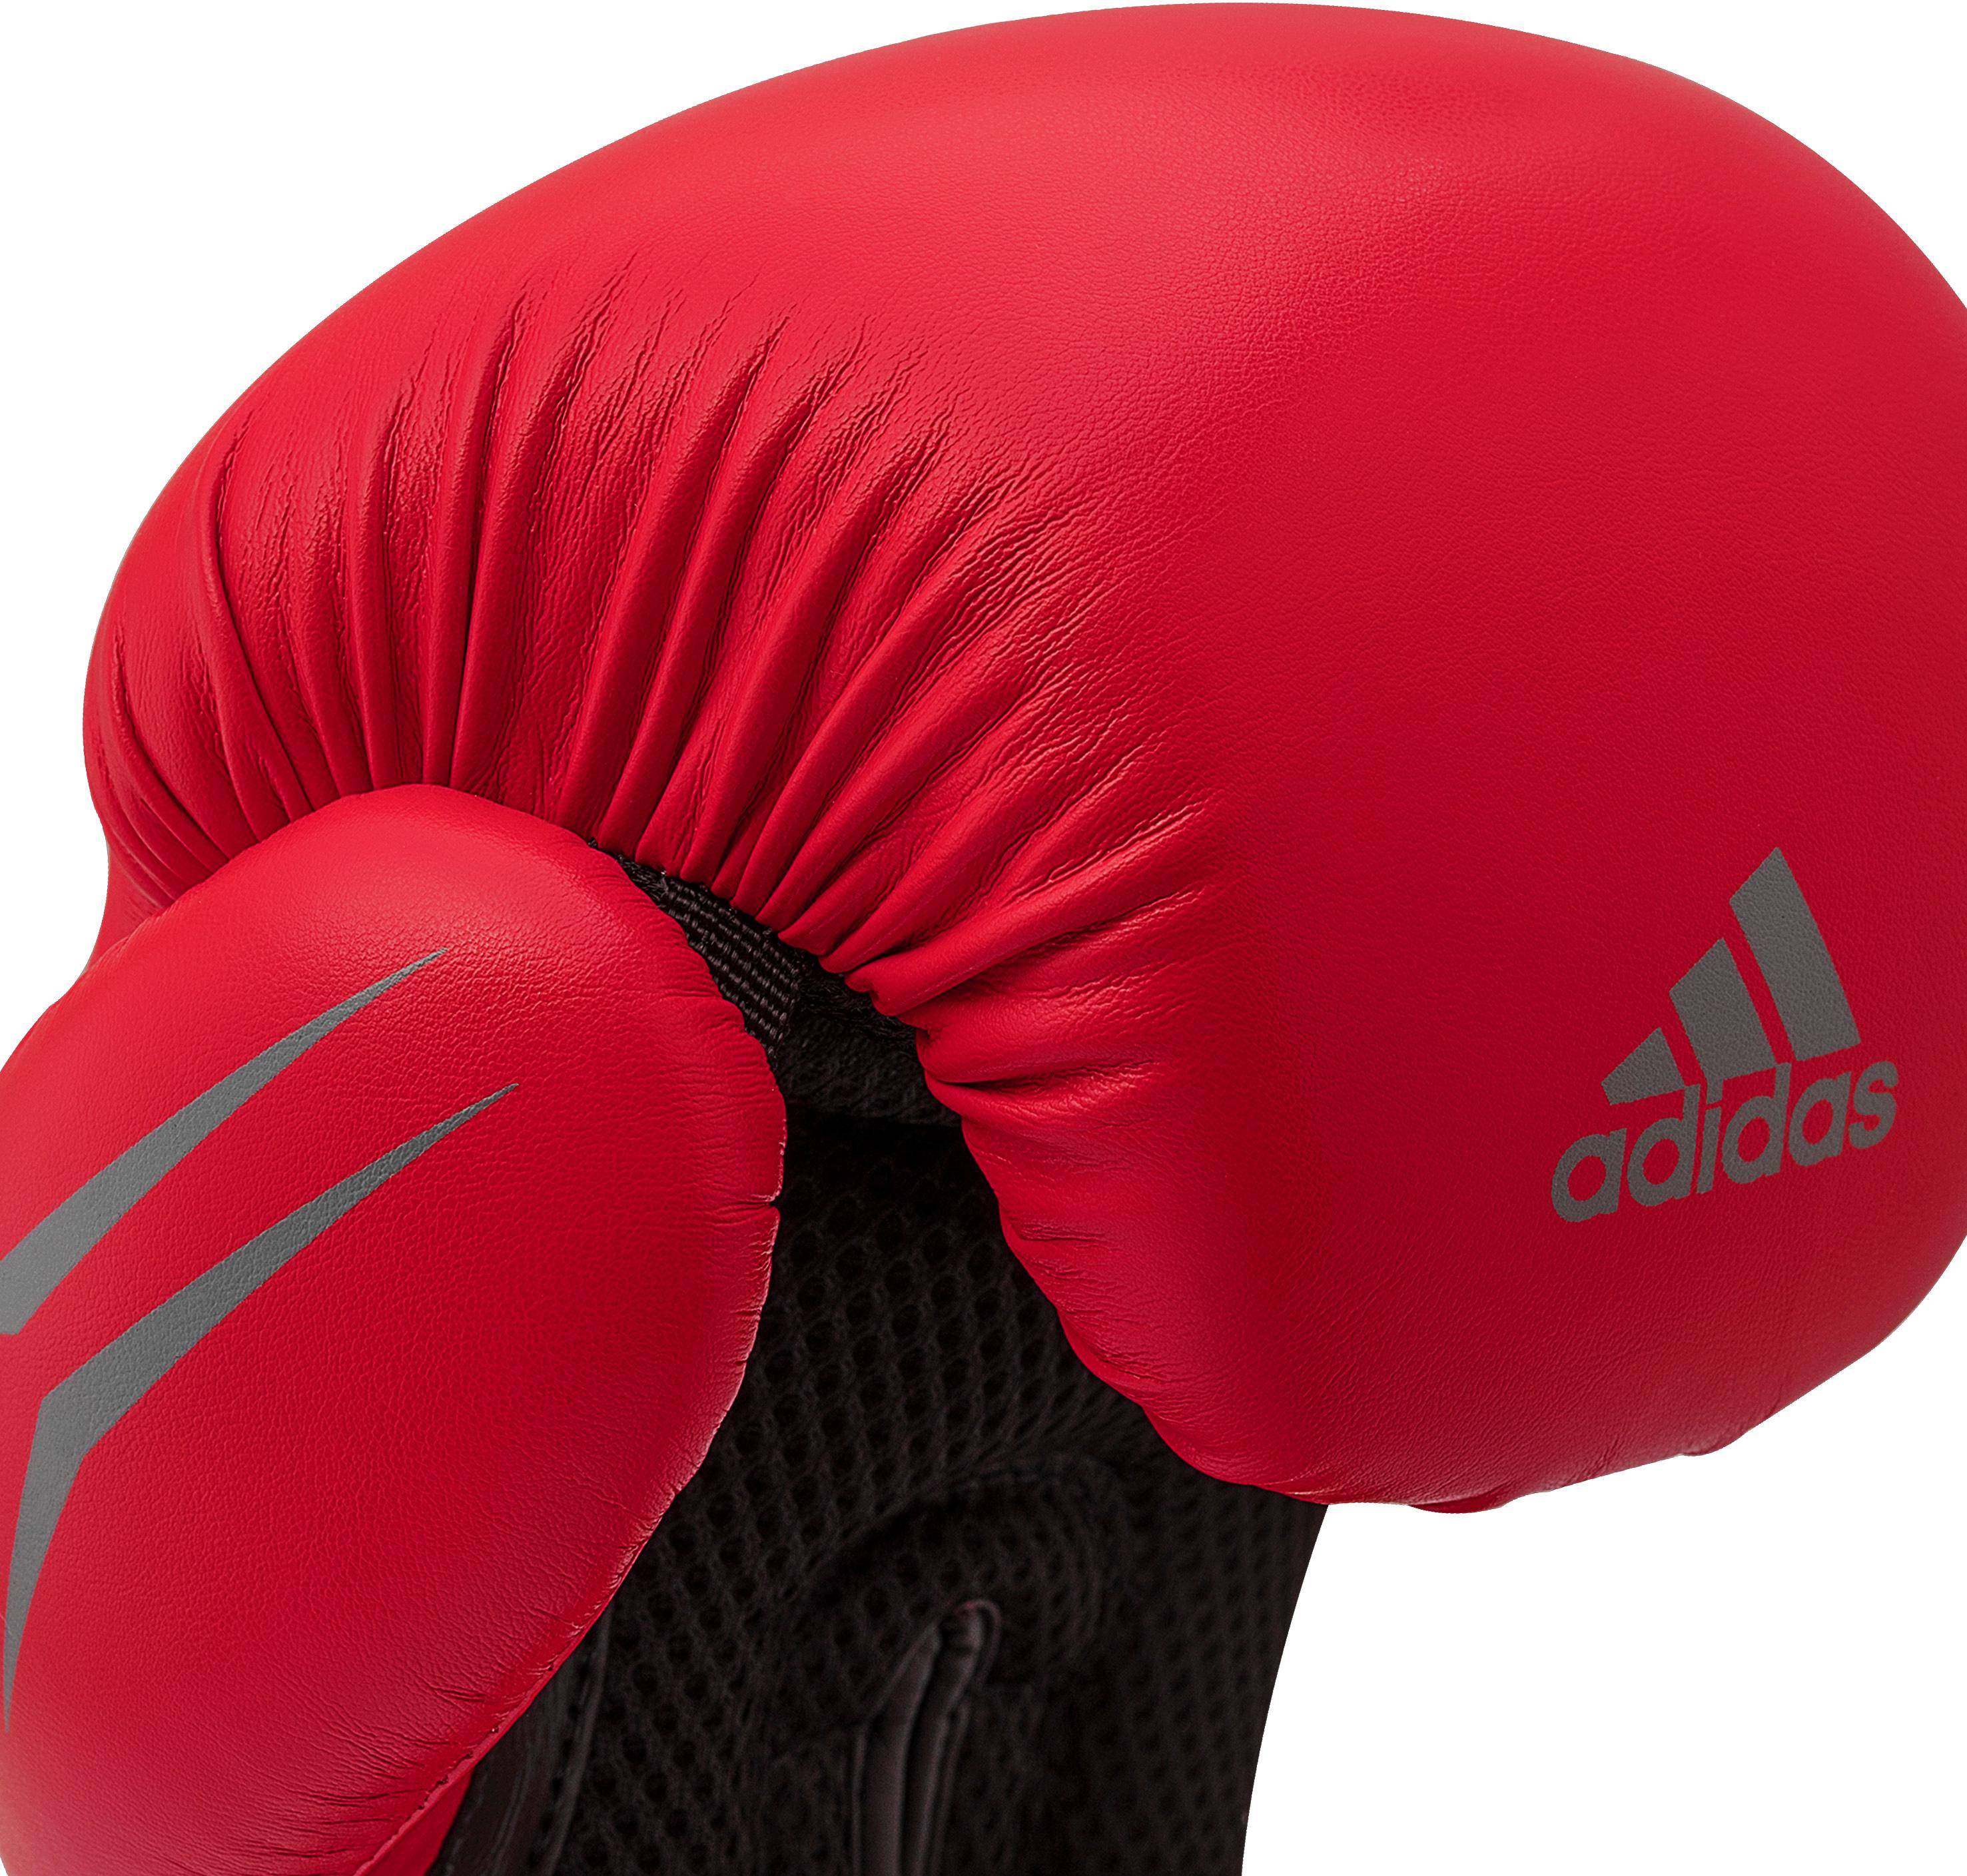 Adidas Speed Tilt 150 Boxhandschuhe Herren rot-schwarz im Online Shop von  SportScheck kaufen